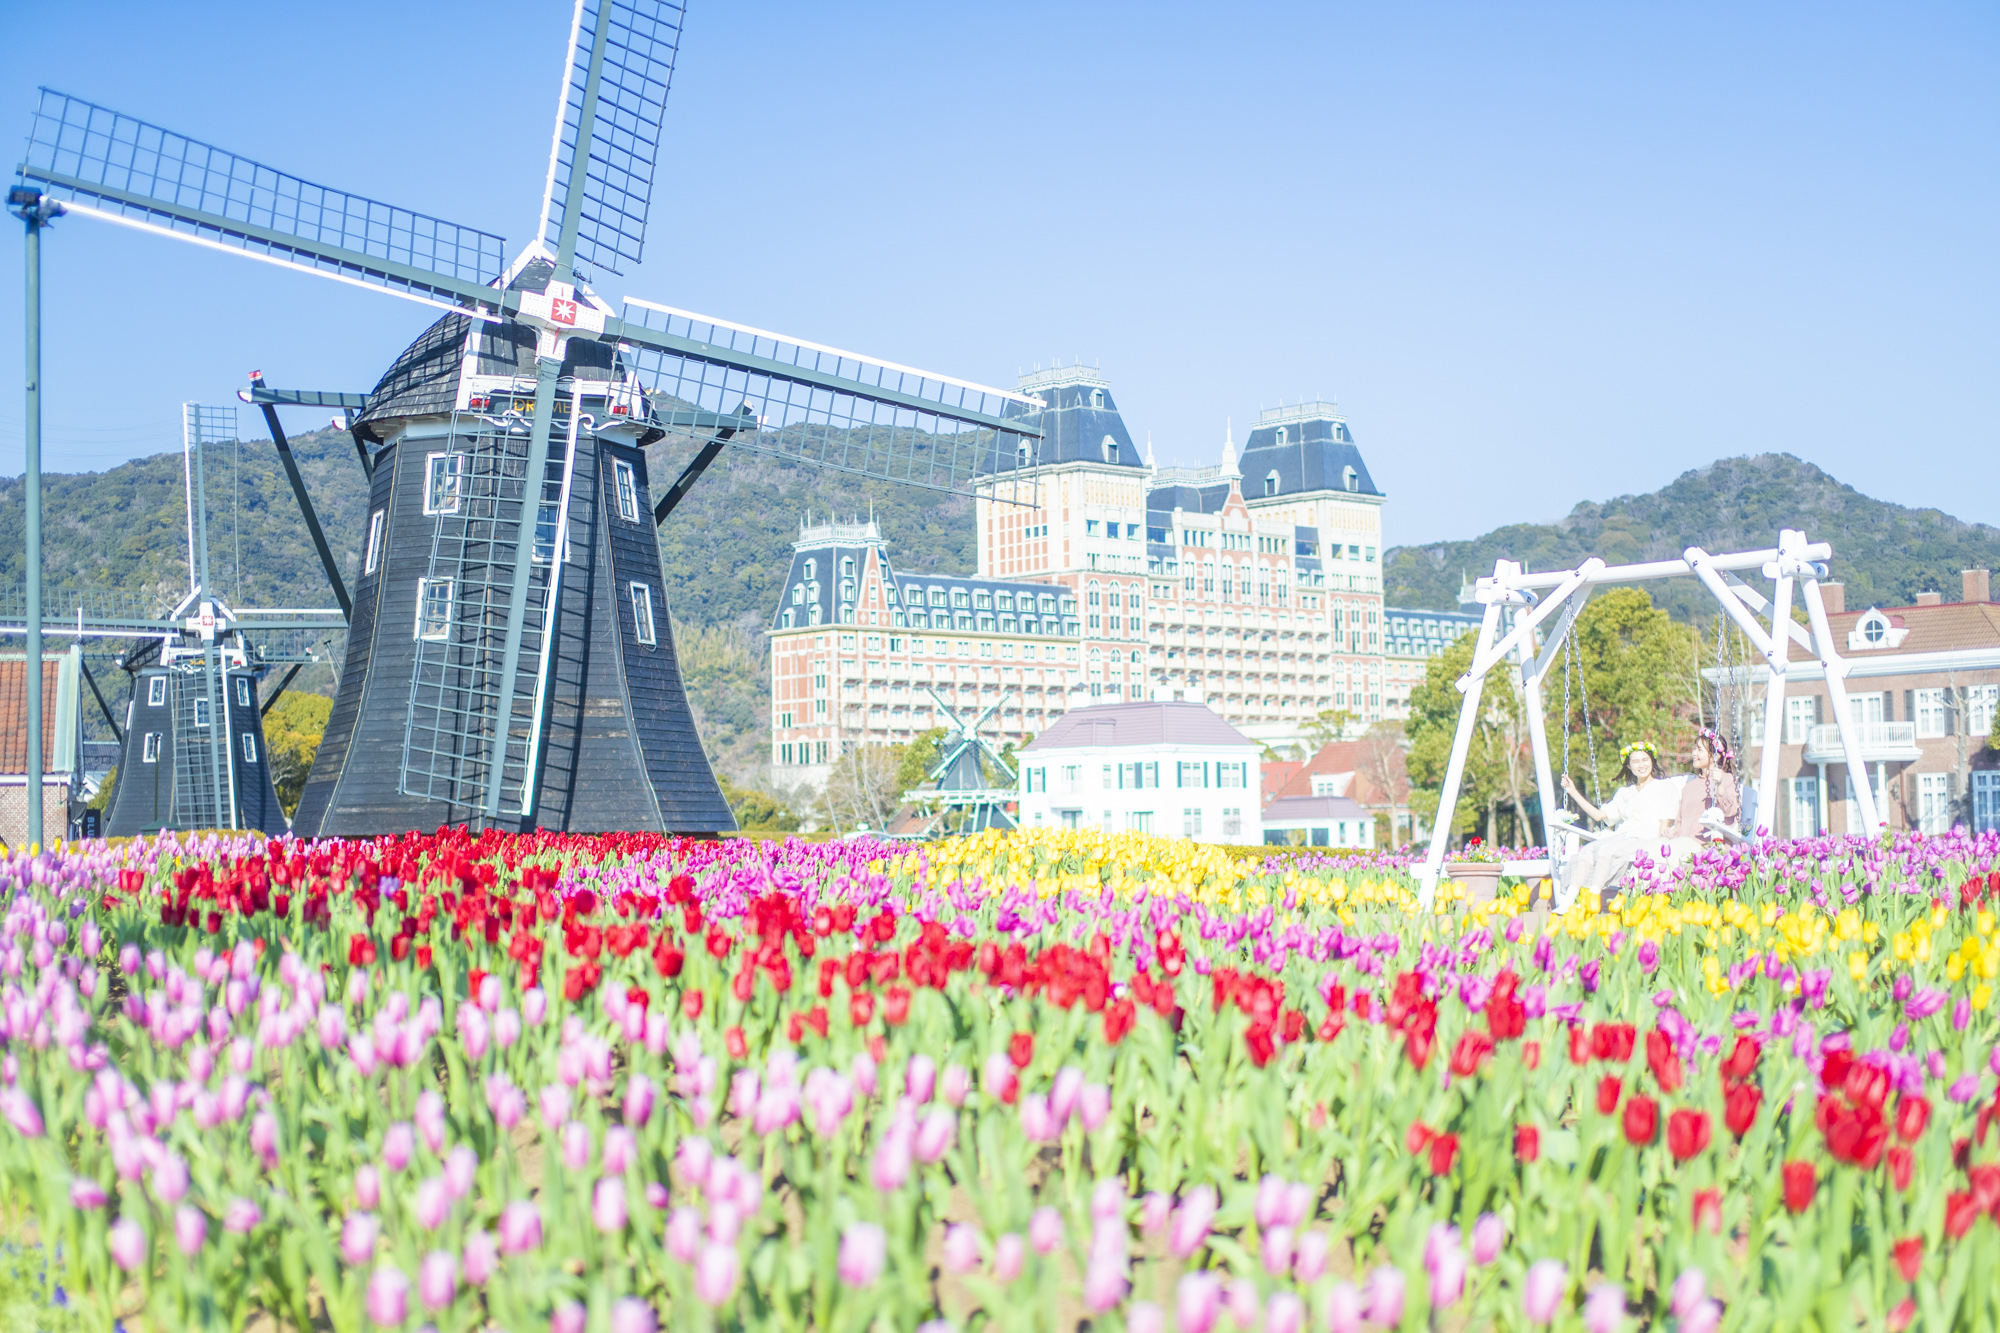 風車 チューリップ まるで春のオランダにいるみたい 日本で一番早く満開のチューリップが楽しめる 100万本のチューリップ祭 ハウステンボス 株式会社のプレスリリース